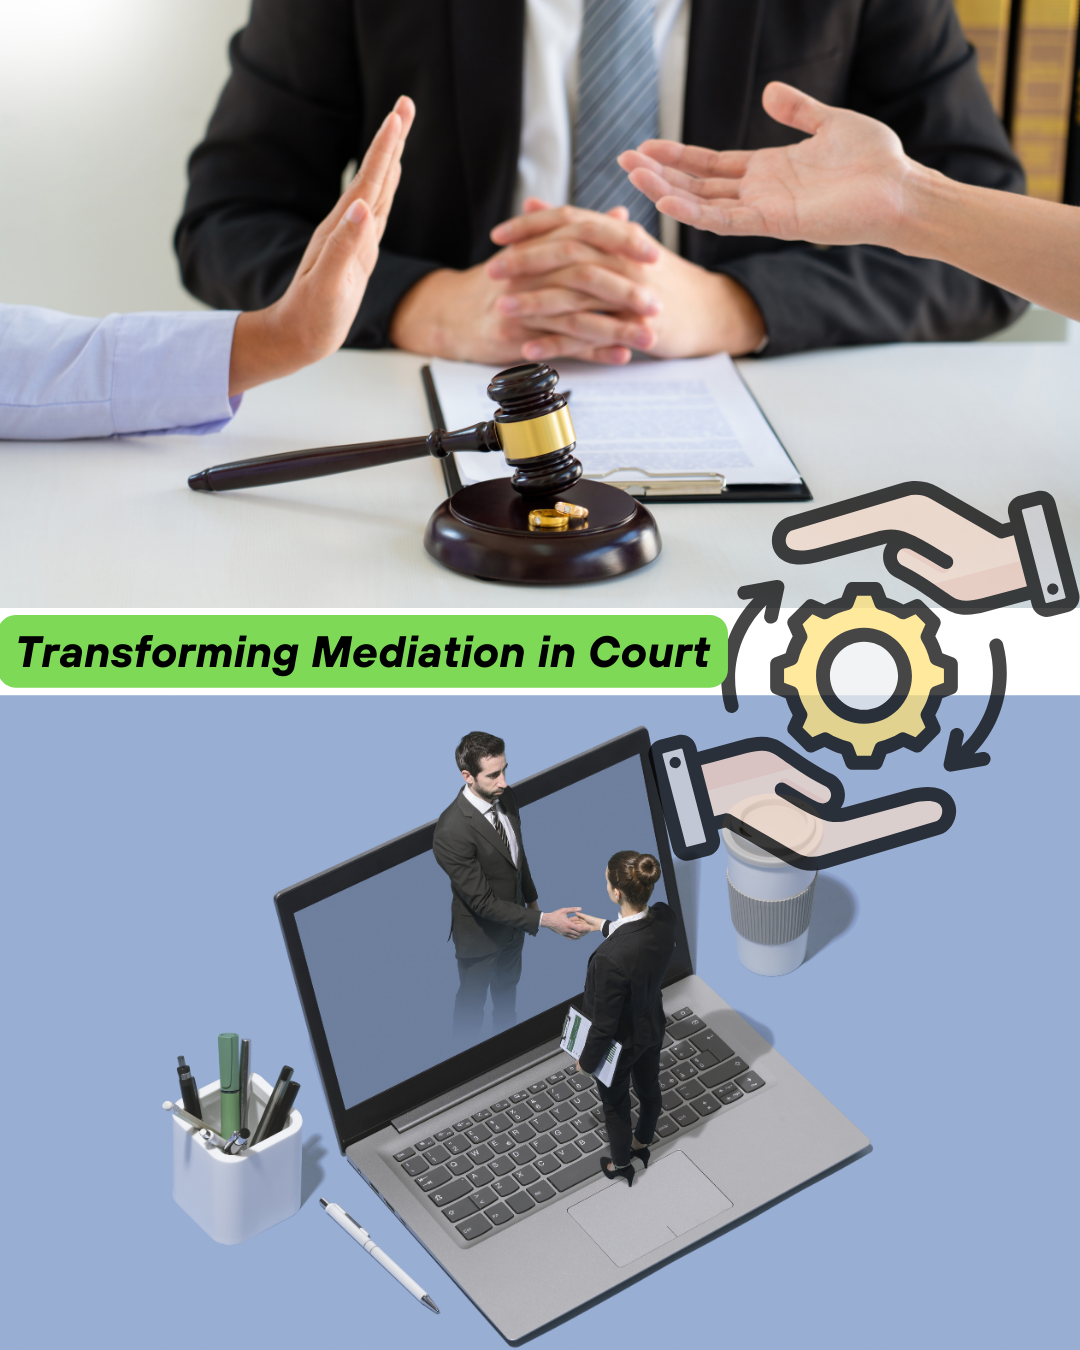 Transformasi Penyelenggaraan Mediasi di Pengadilan dari Konvensional Menjadi Elektronik